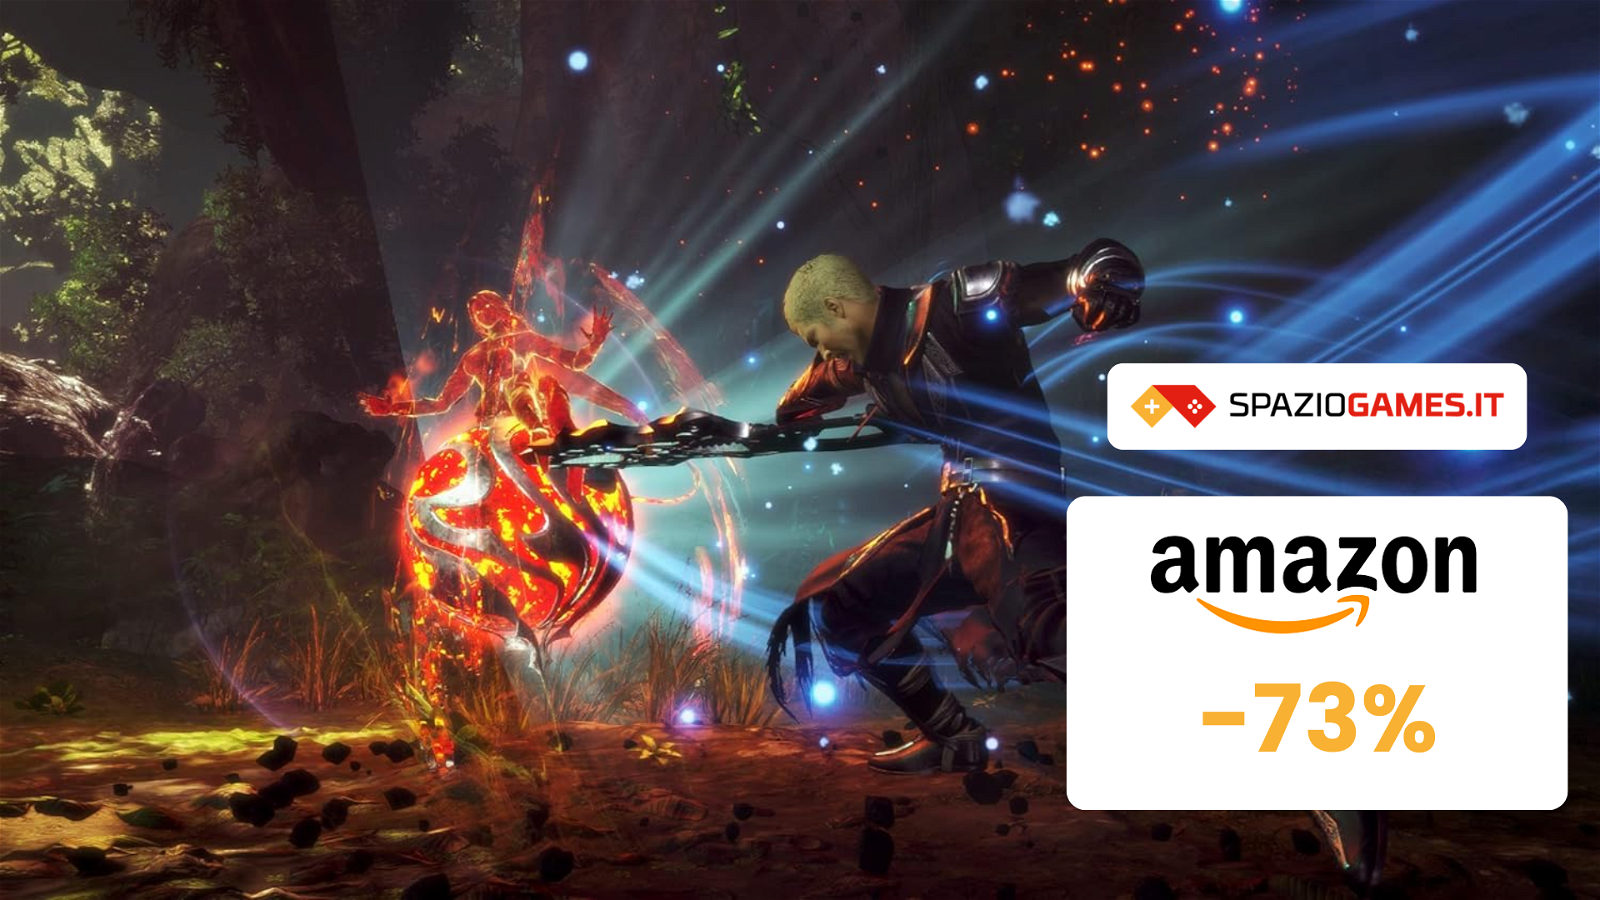 Final Fantasy Origin PS5 al prezzo PIÙ BASSO di sempre su Amazon! (-73%)